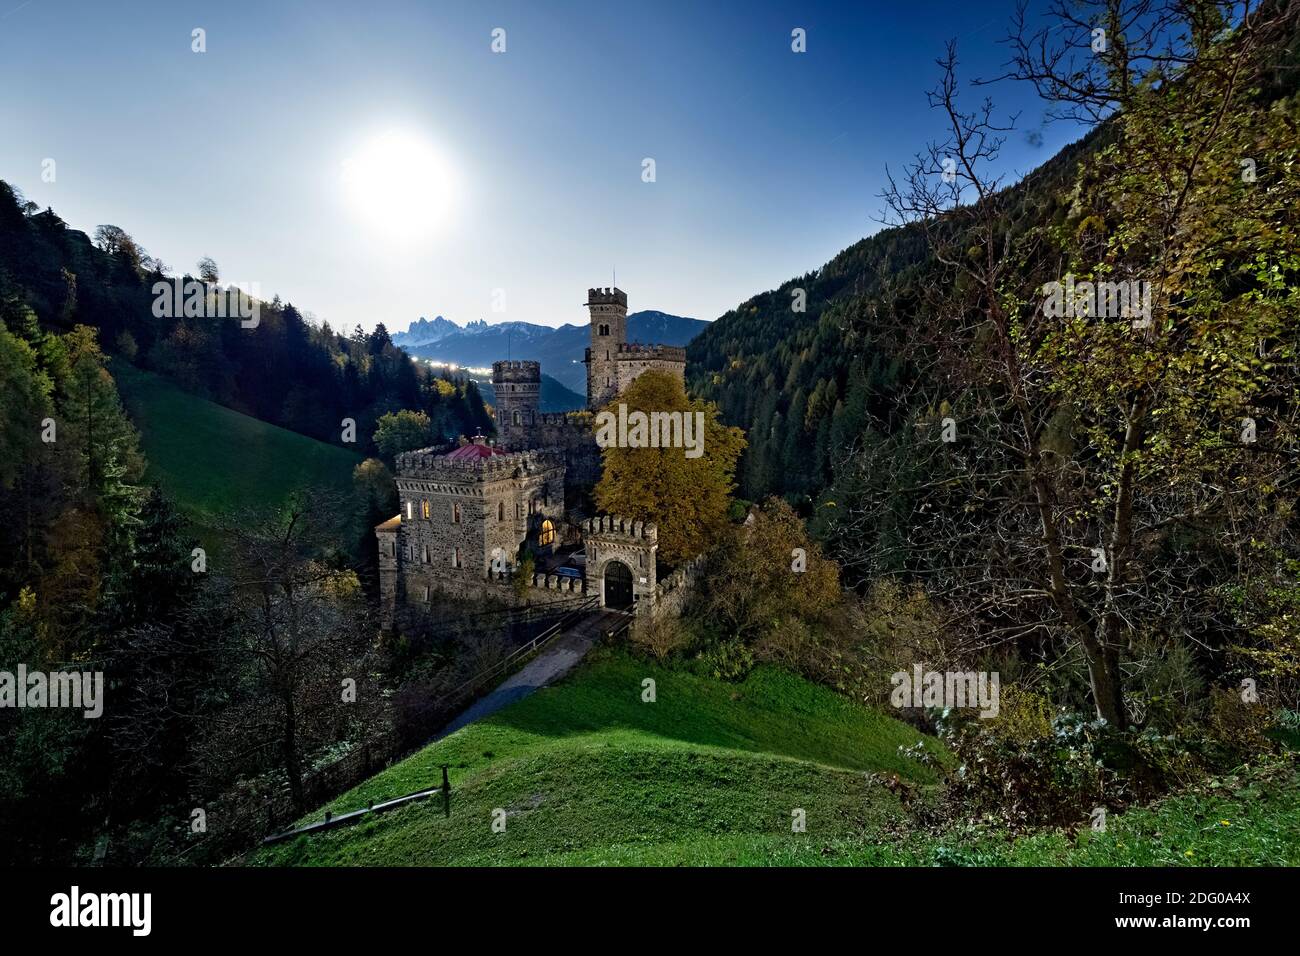 Il castello di Gernstein in una notte di luna piena. Costruito nel Medioevo, è stato restaurato nel 19 ° secolo in stile neo-gotico. Alto Adige, Italia. Foto Stock